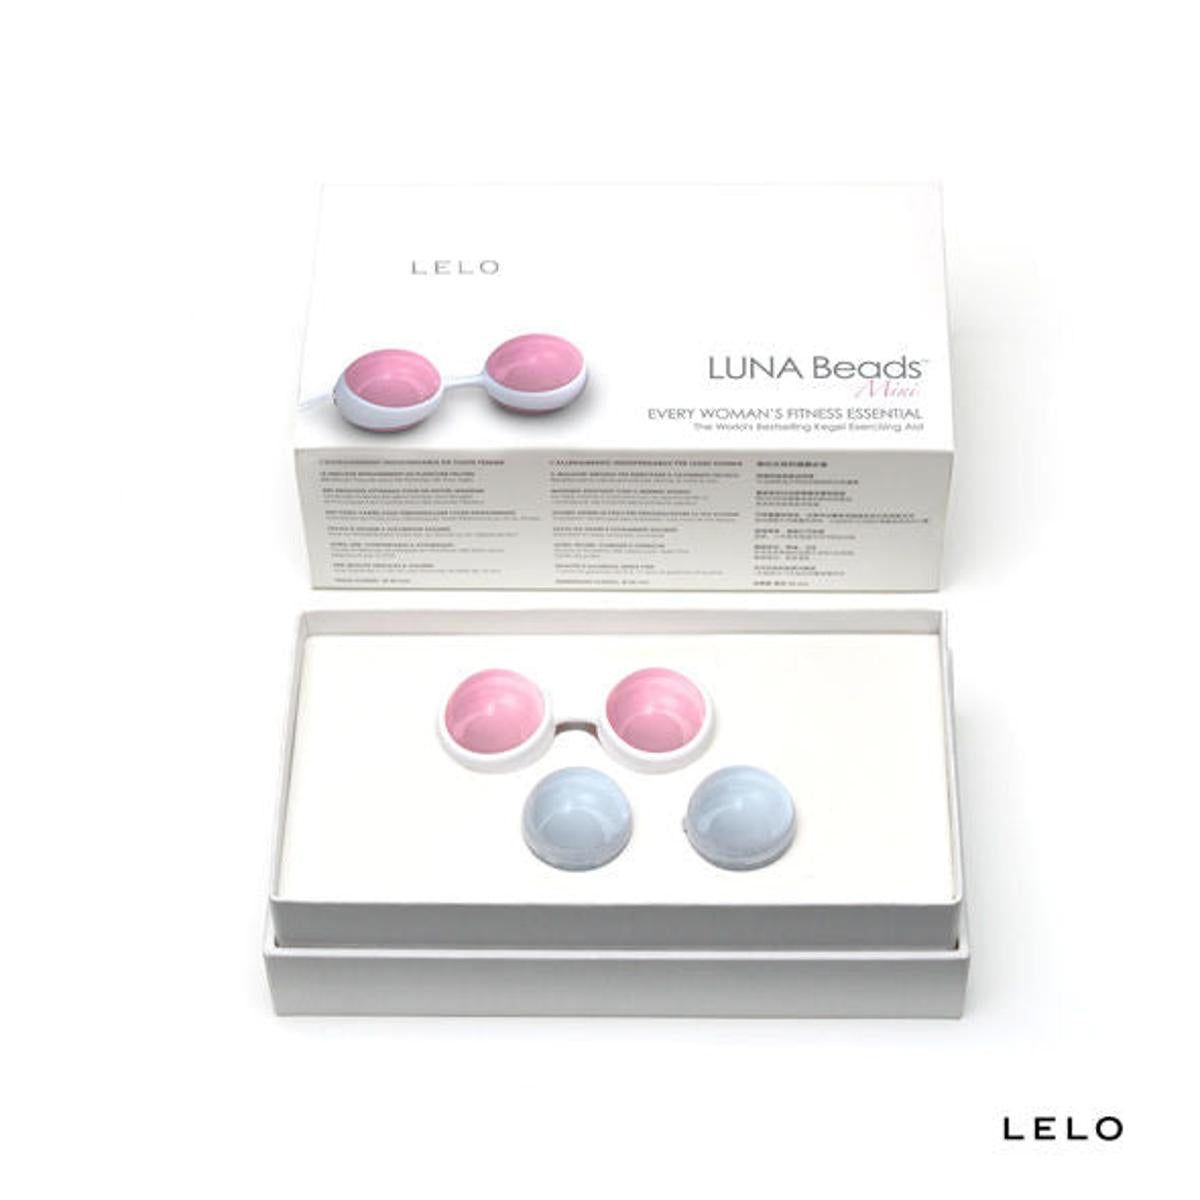 Liebeskugel Luna Beads | Vaginal Training für einen starken Beckenboden | Lelo